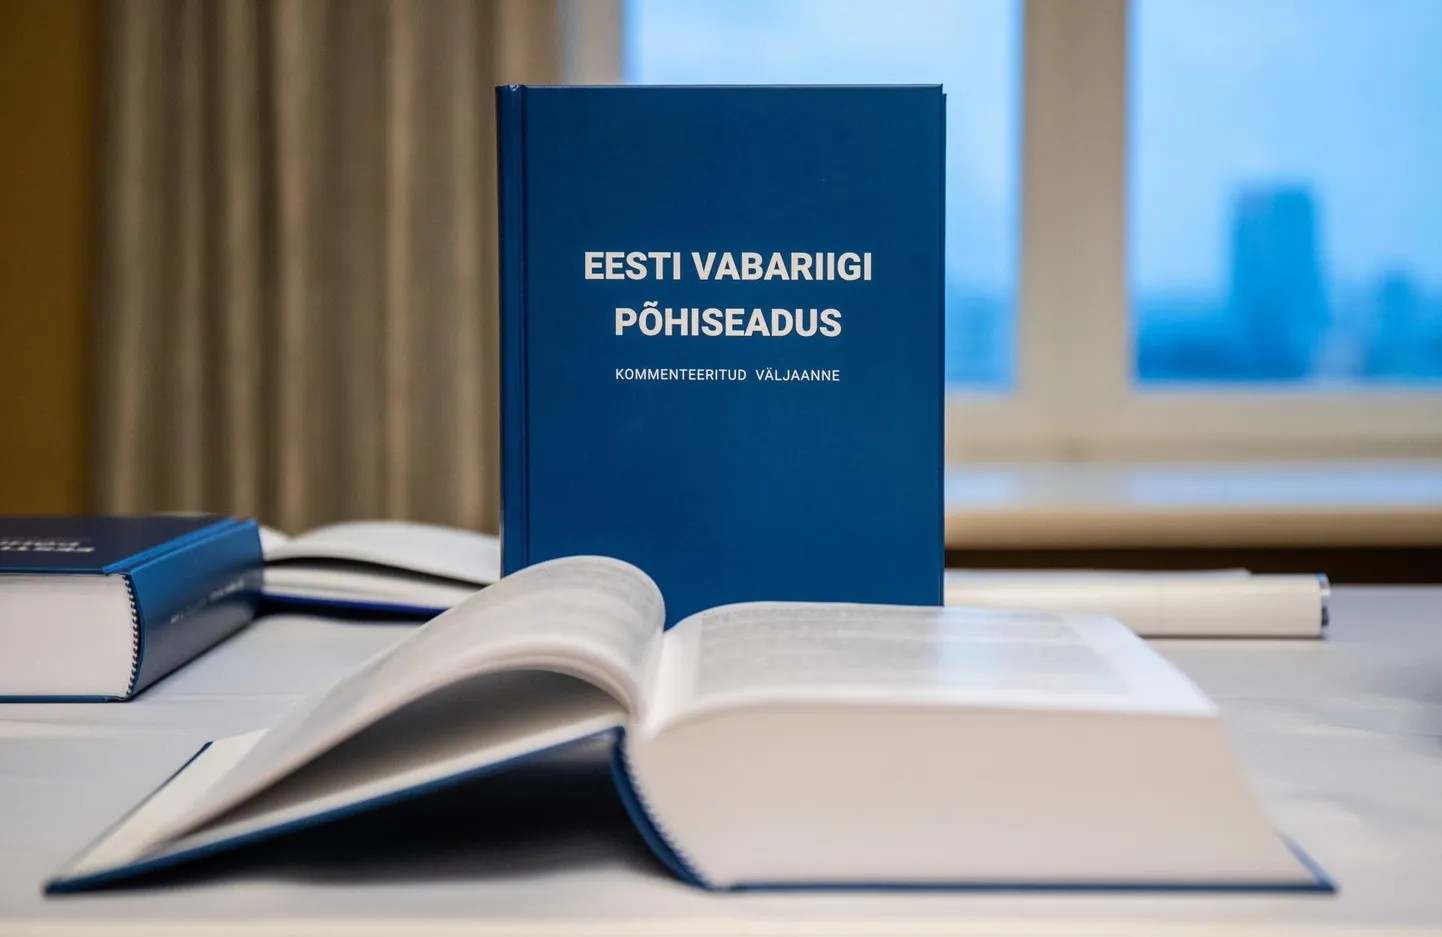 Eesti vabariigi põhiseaduse kommenteeritud väljaande esitlus õiguskantsleri residentsis 21.12.2020.